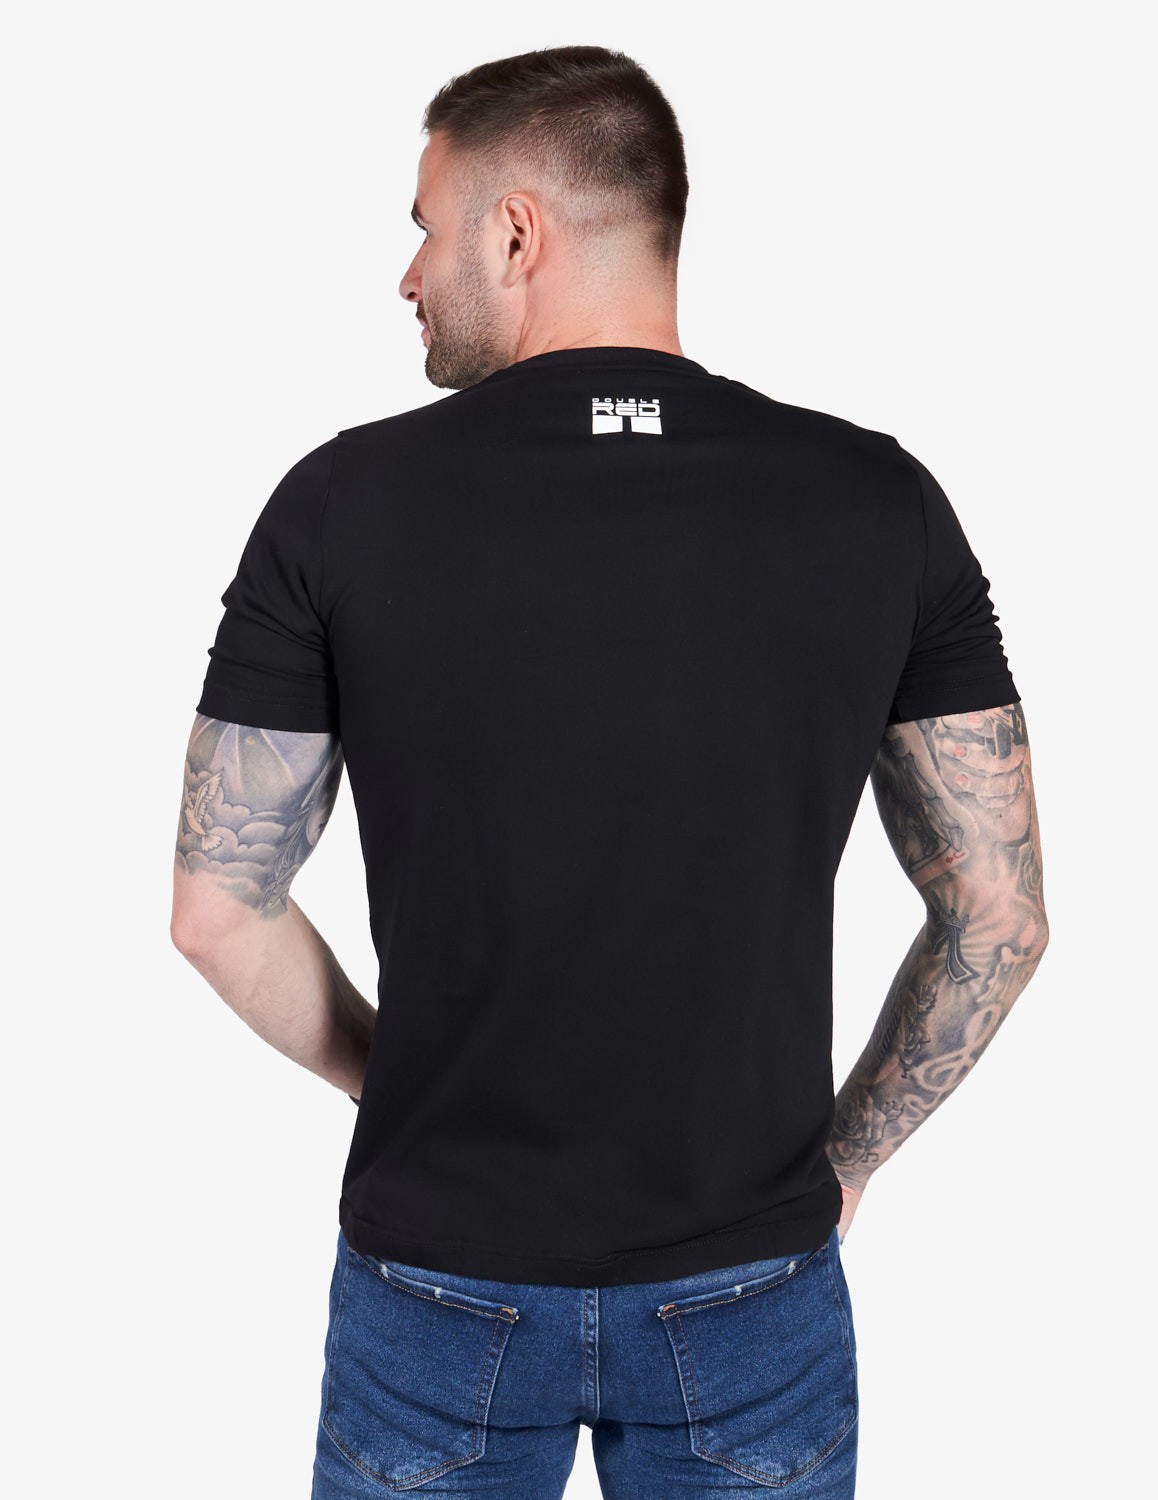 T-shirt CAMODRESSCODE™ Black/Turquoise